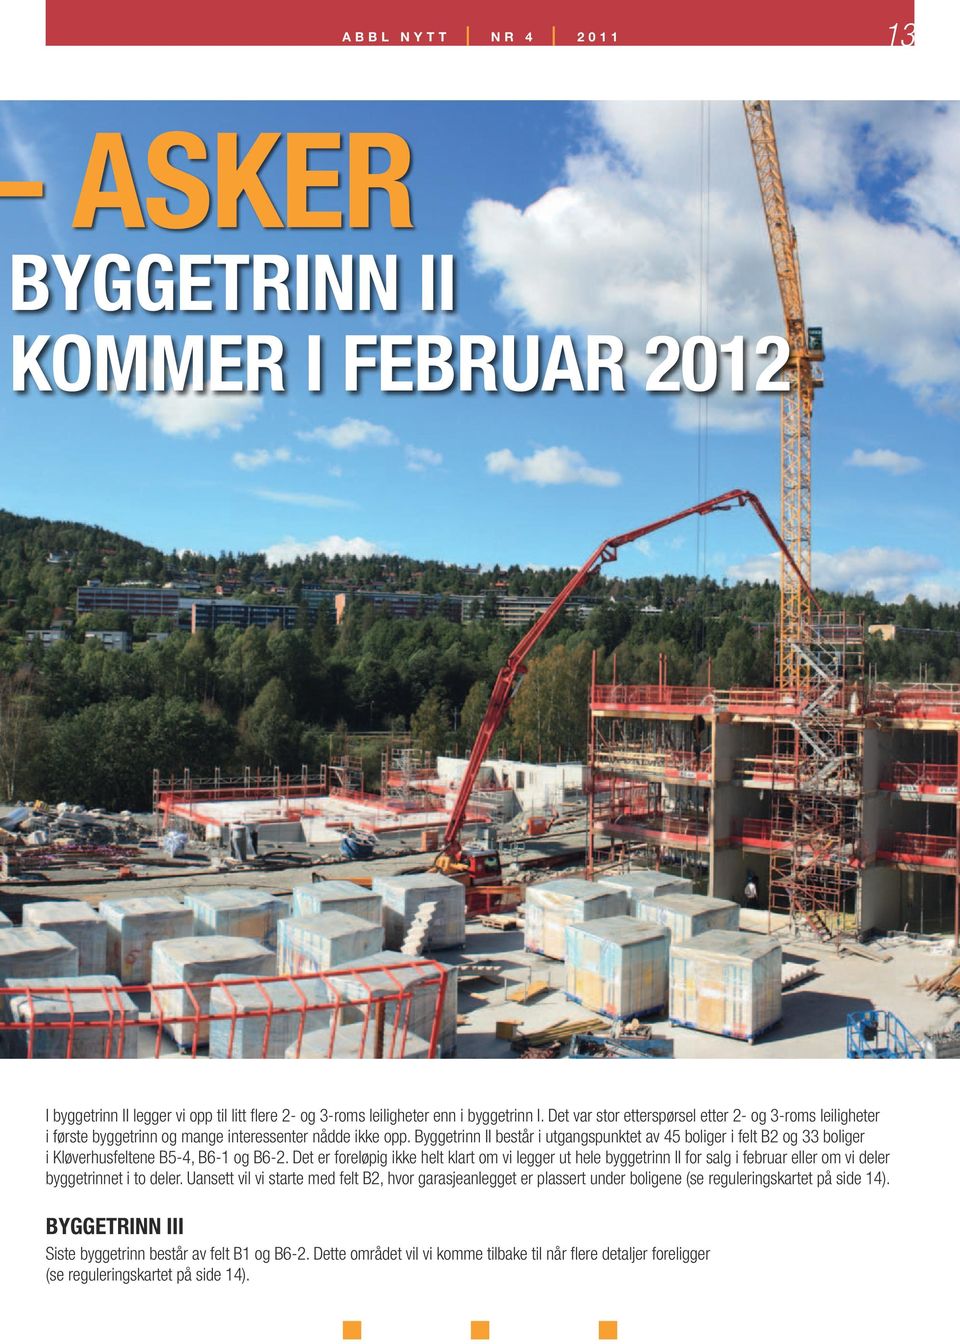 Byggetrinn II består i utgangspunktet av 45 boliger i felt B2 og 33 boliger i Kløverhusfeltene B5-4, B6-1 og B6-2.